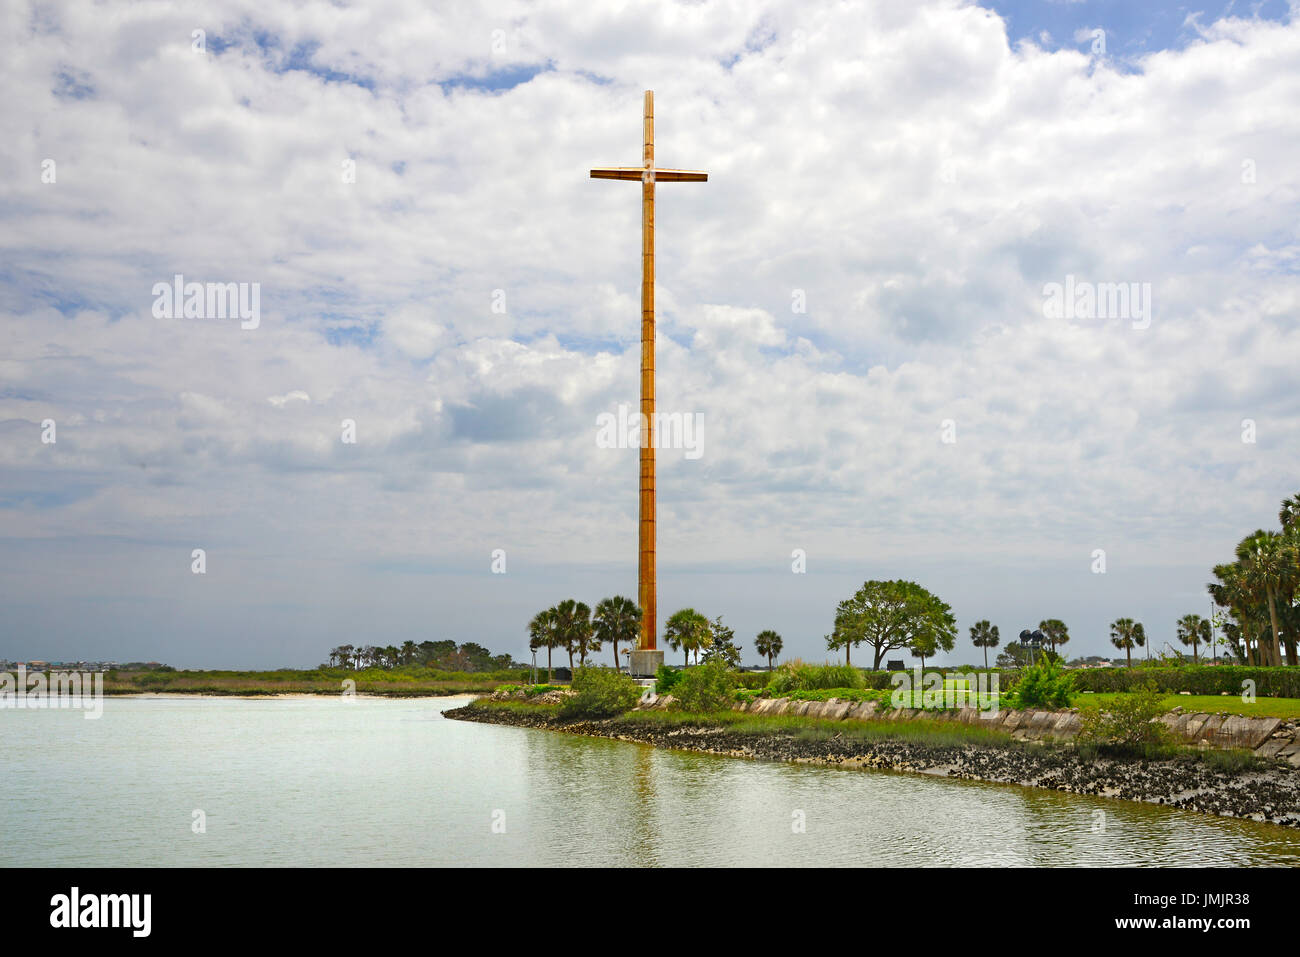 Los 208 ft cruz marcando el spot de la primera misa católica en los EE.UU. Fuente de la juventud en el histórico Parque de San Agustín, Florida, la ciudad más antigua de Ameri Foto de stock